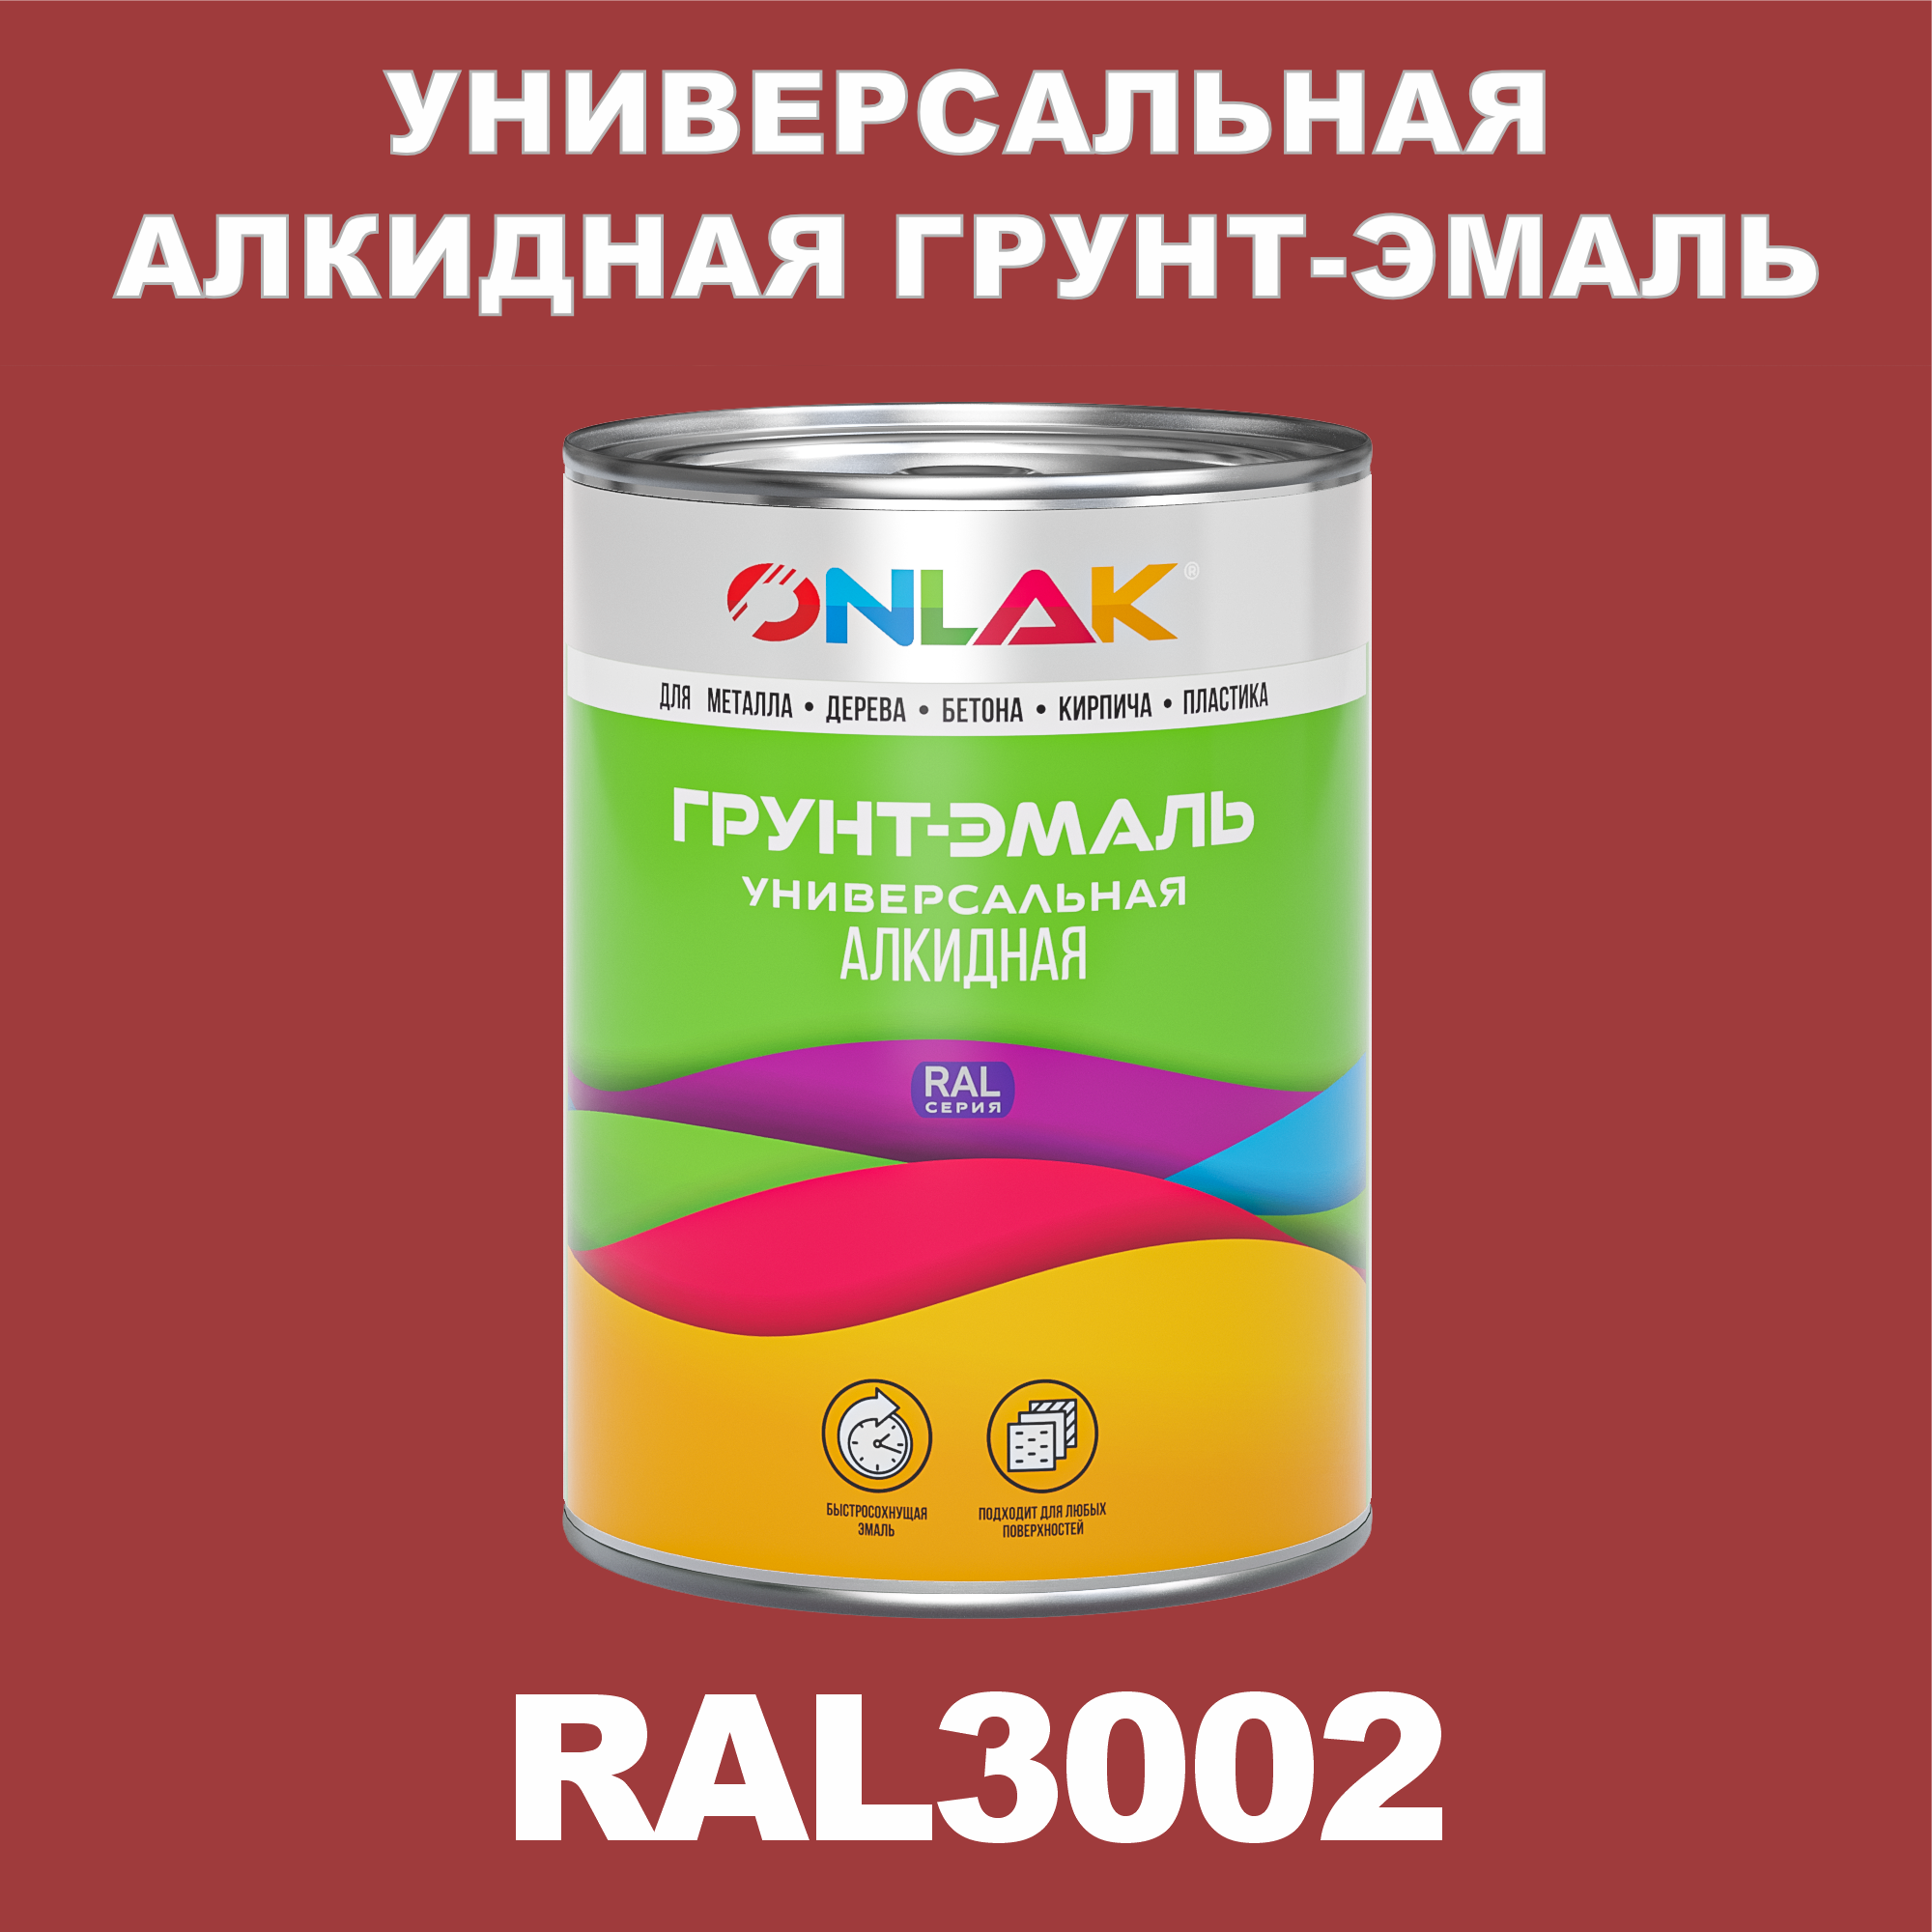 Грунт-эмаль ONLAK 1К RAL3002 антикоррозионная алкидная по металлу по ржавчине 1 кг грунт эмаль yollo по ржавчине алкидная синяя 0 9 кг